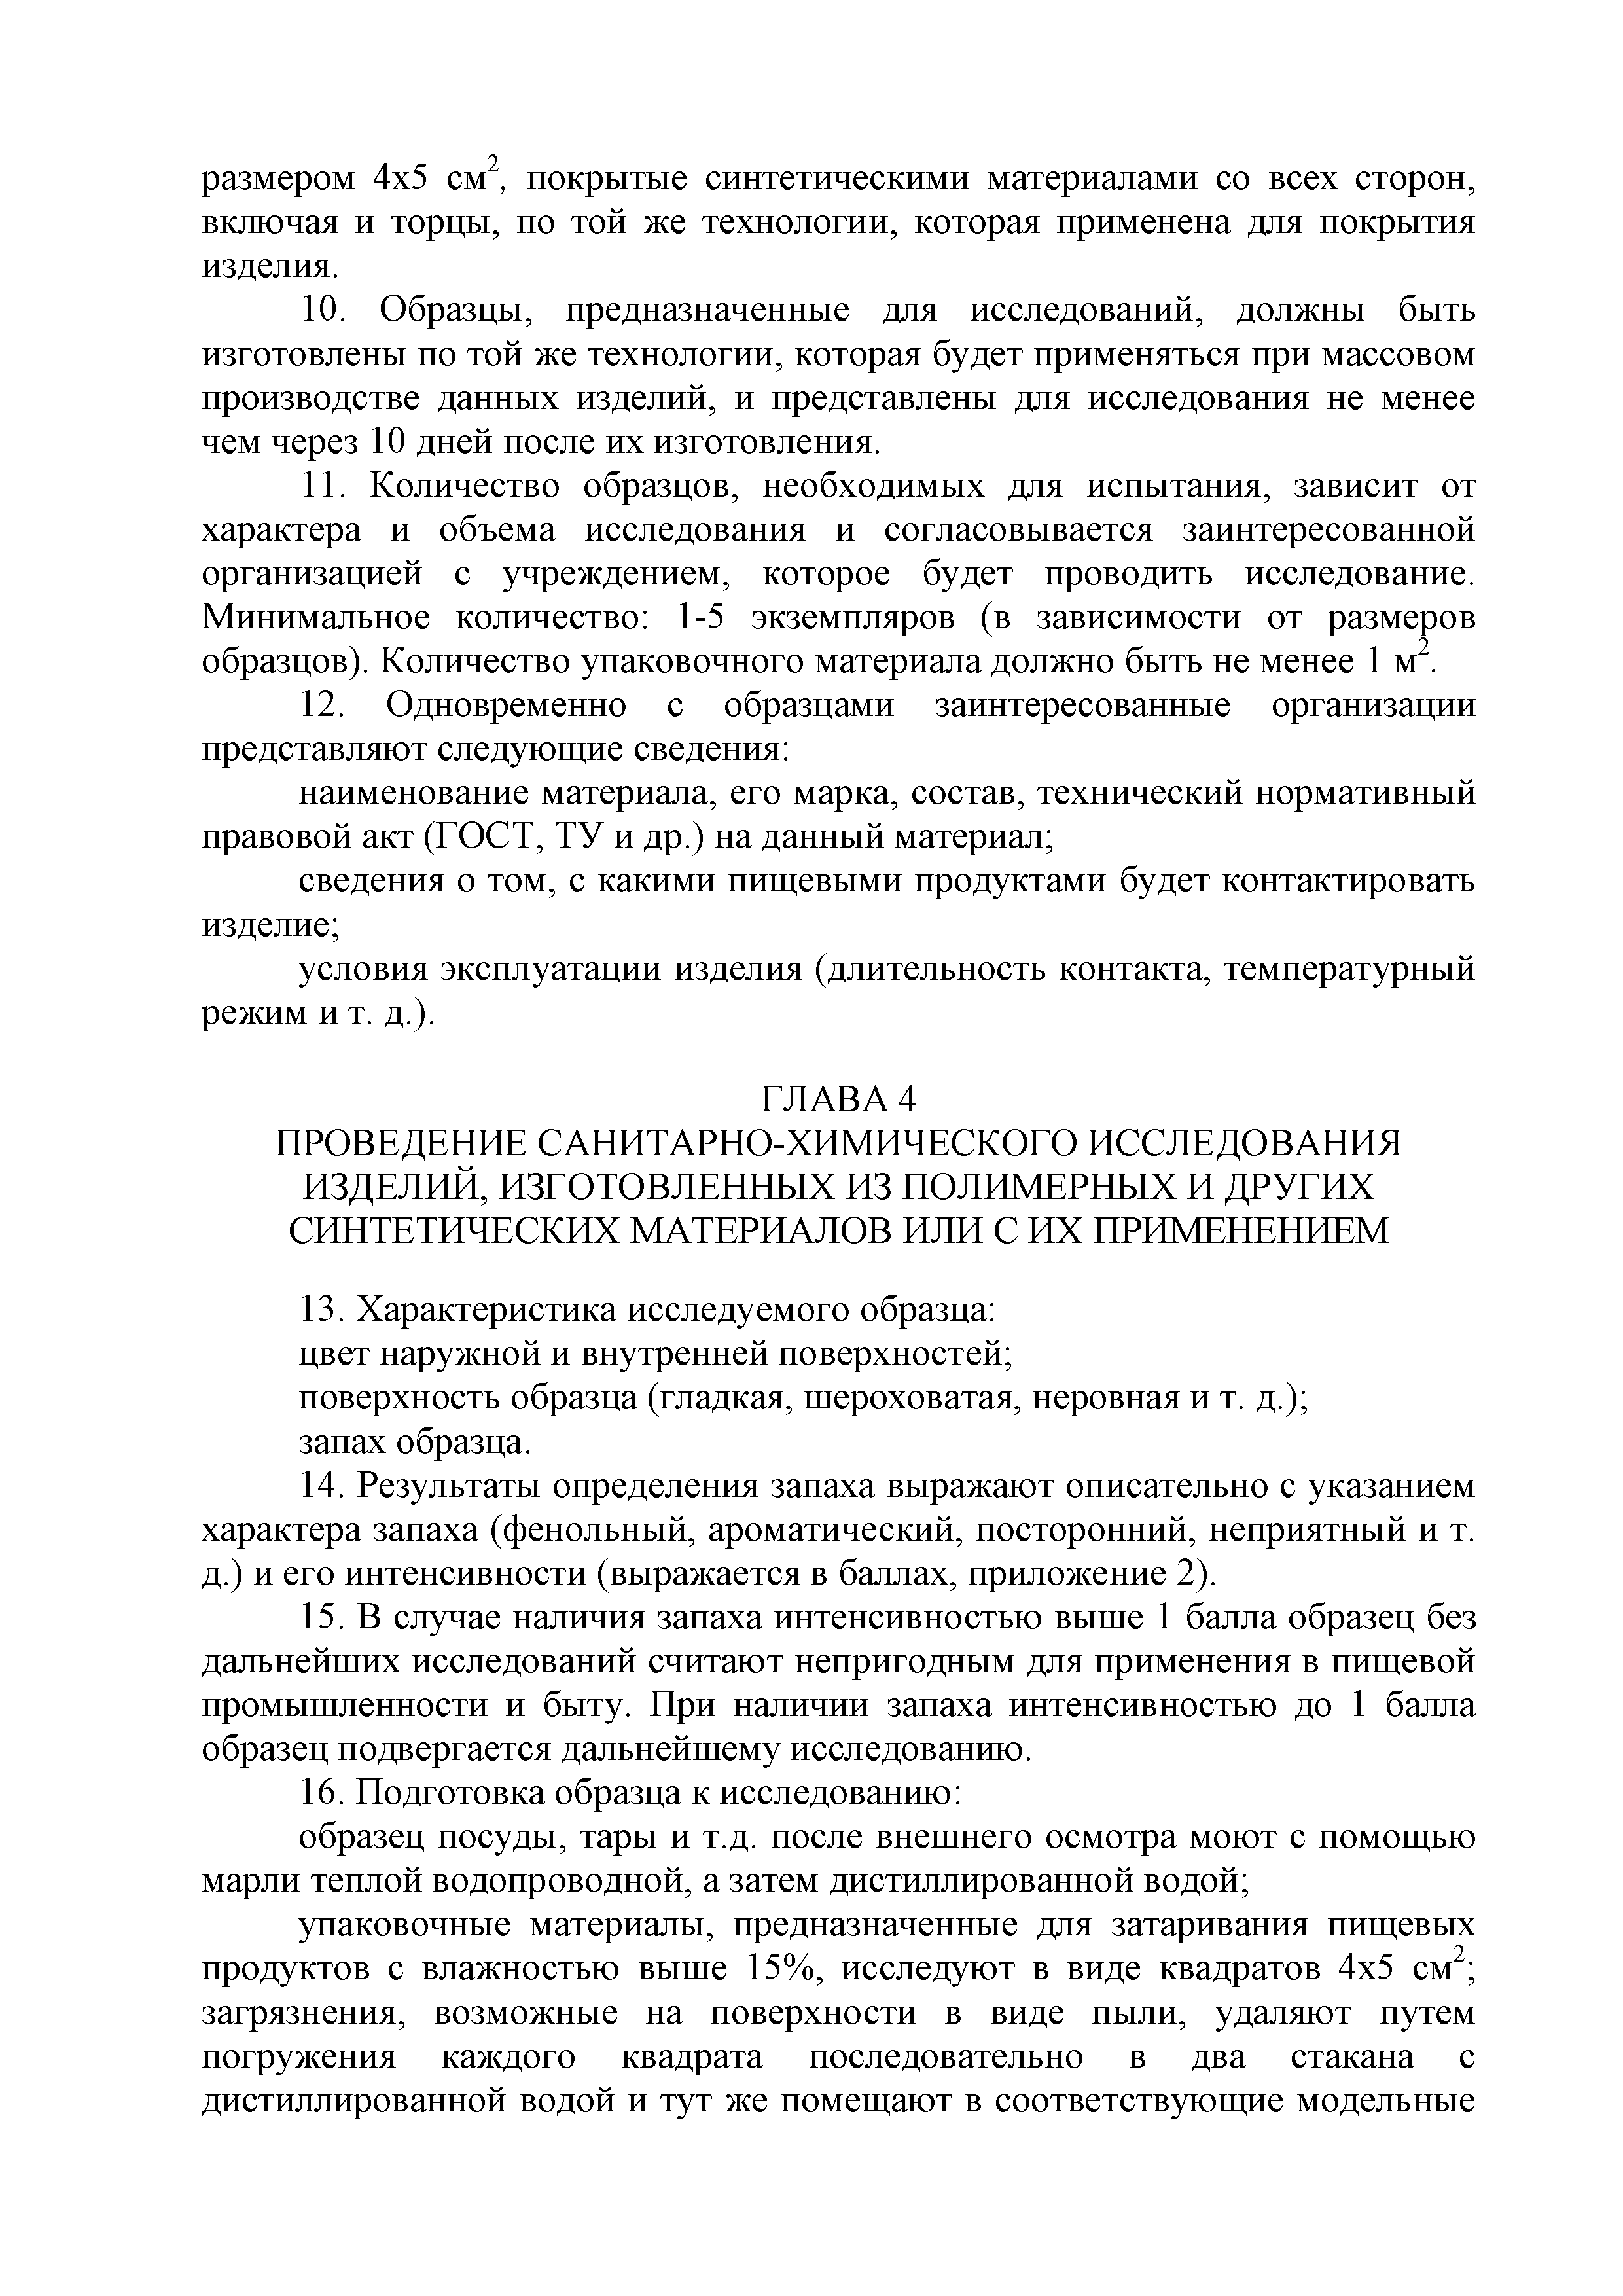 Инструкция 2.3.3.10-15-64-2005